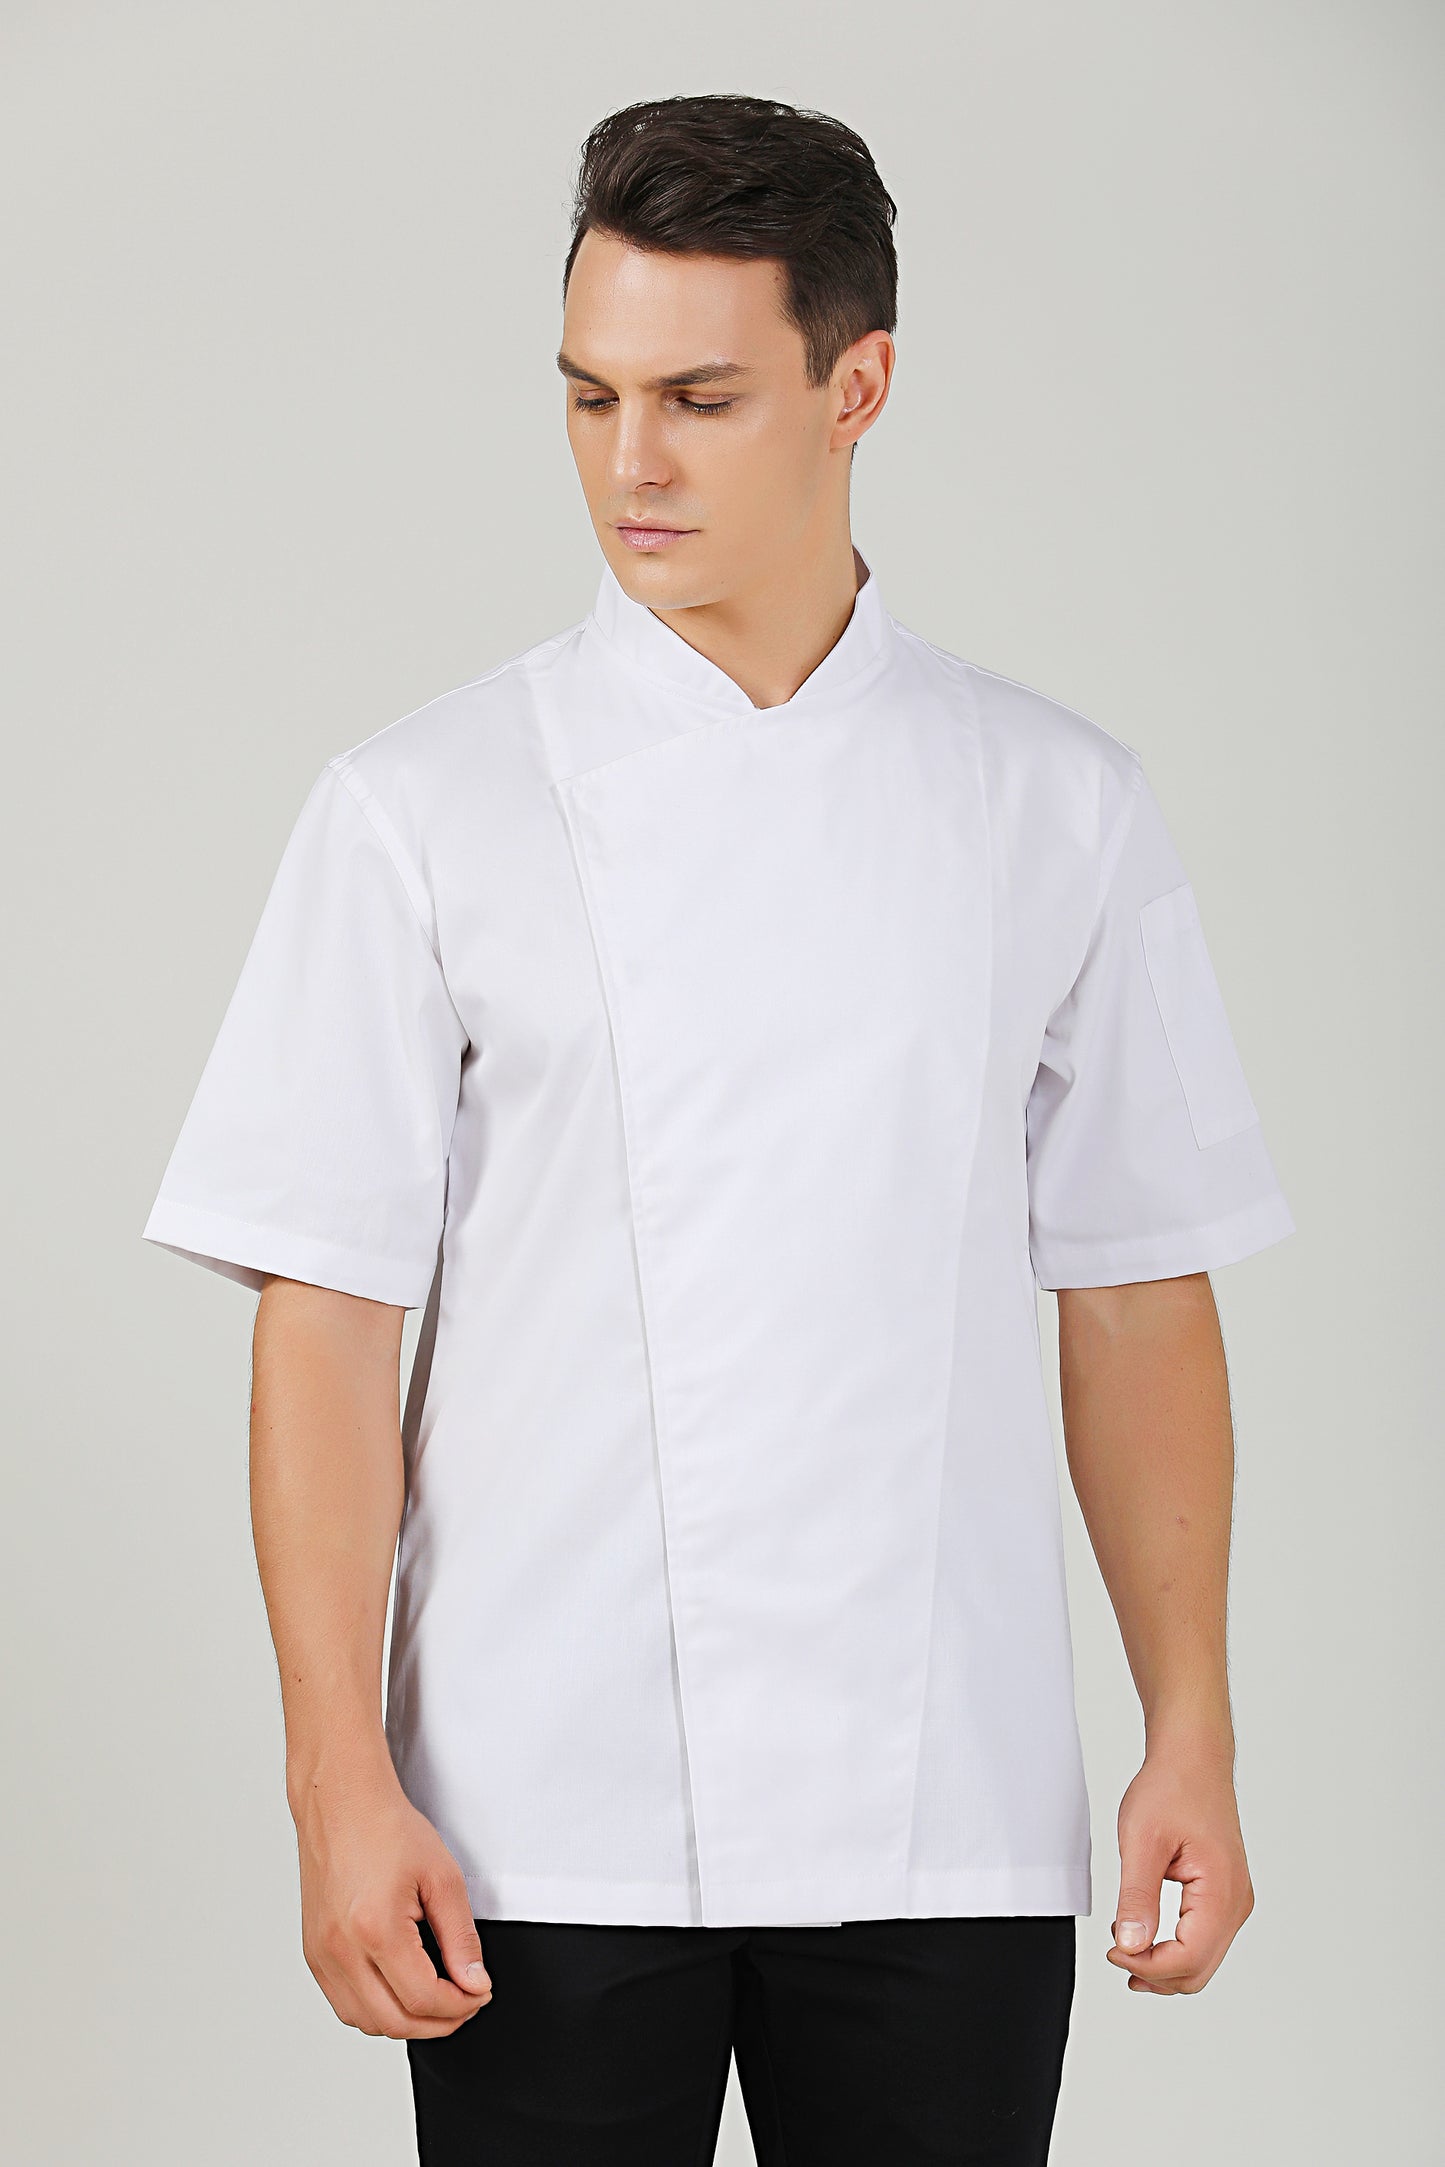 Holly White Chef Jacket, Short Sleeve